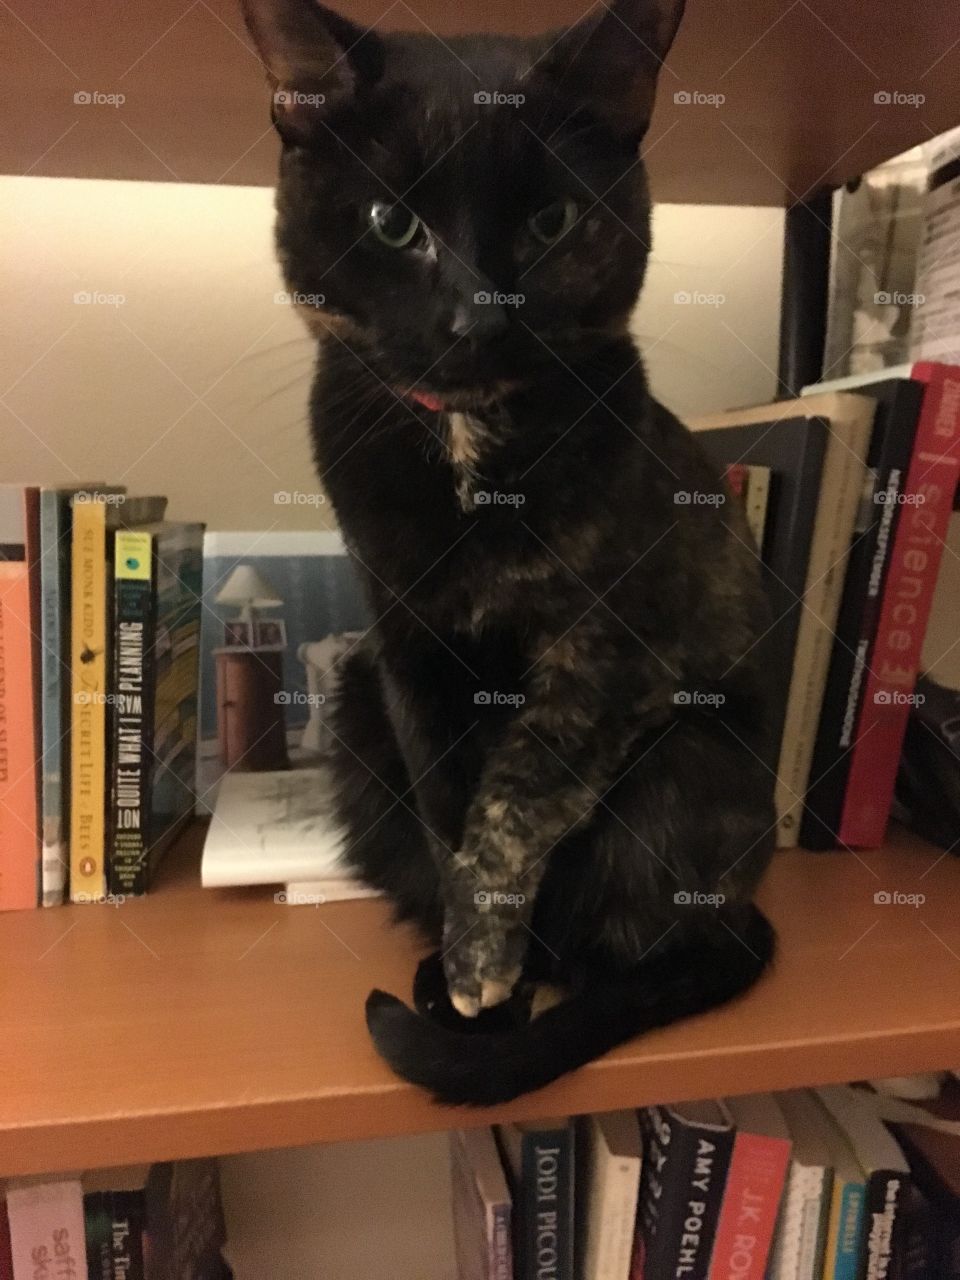 Bookshelf kitten